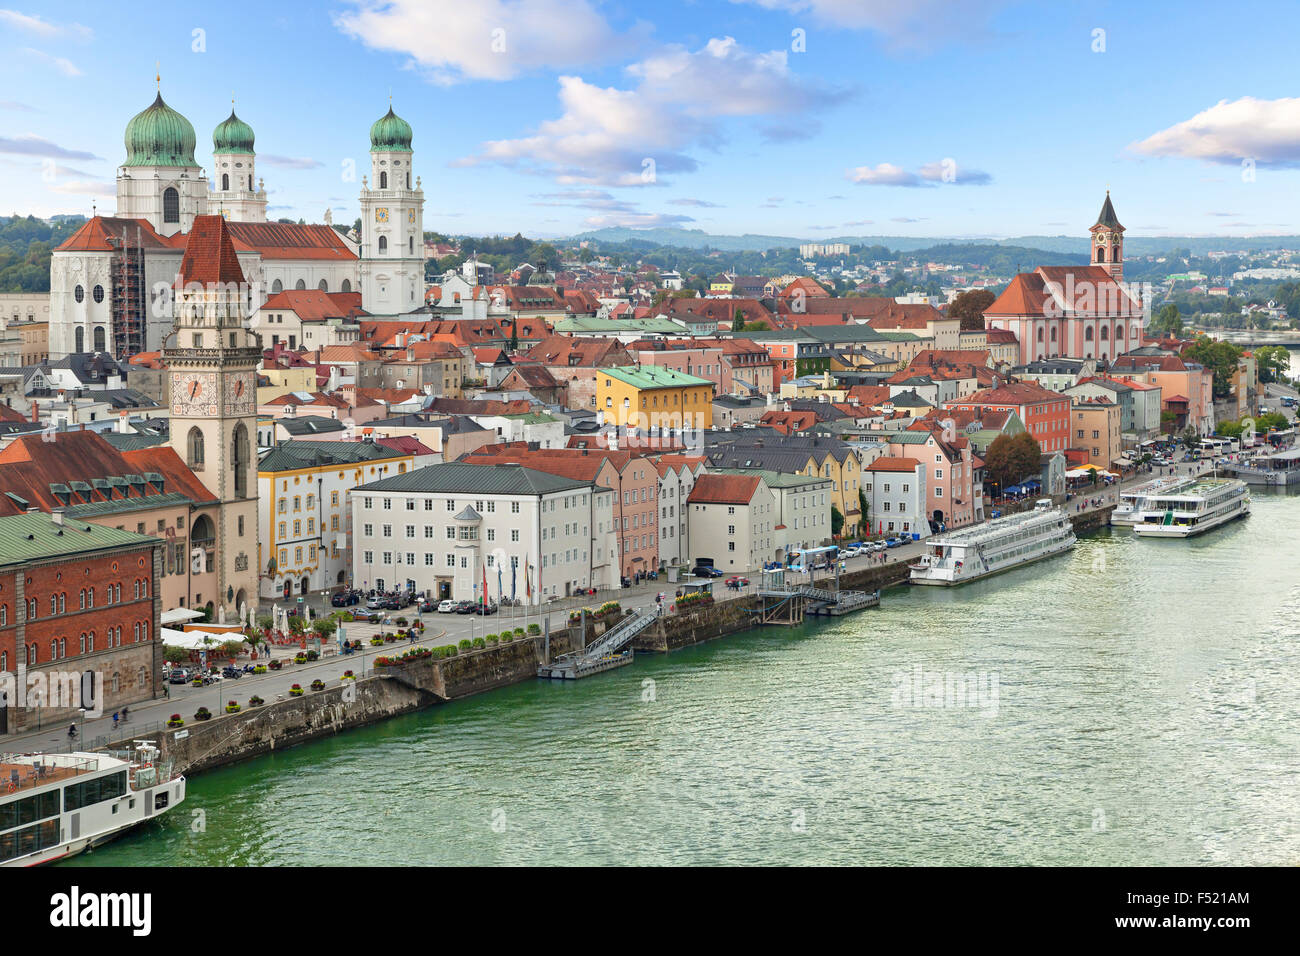 Vista aerea di Passau con il fiume Danubio, embankment e cattedrale, Baviera, Germania Foto Stock